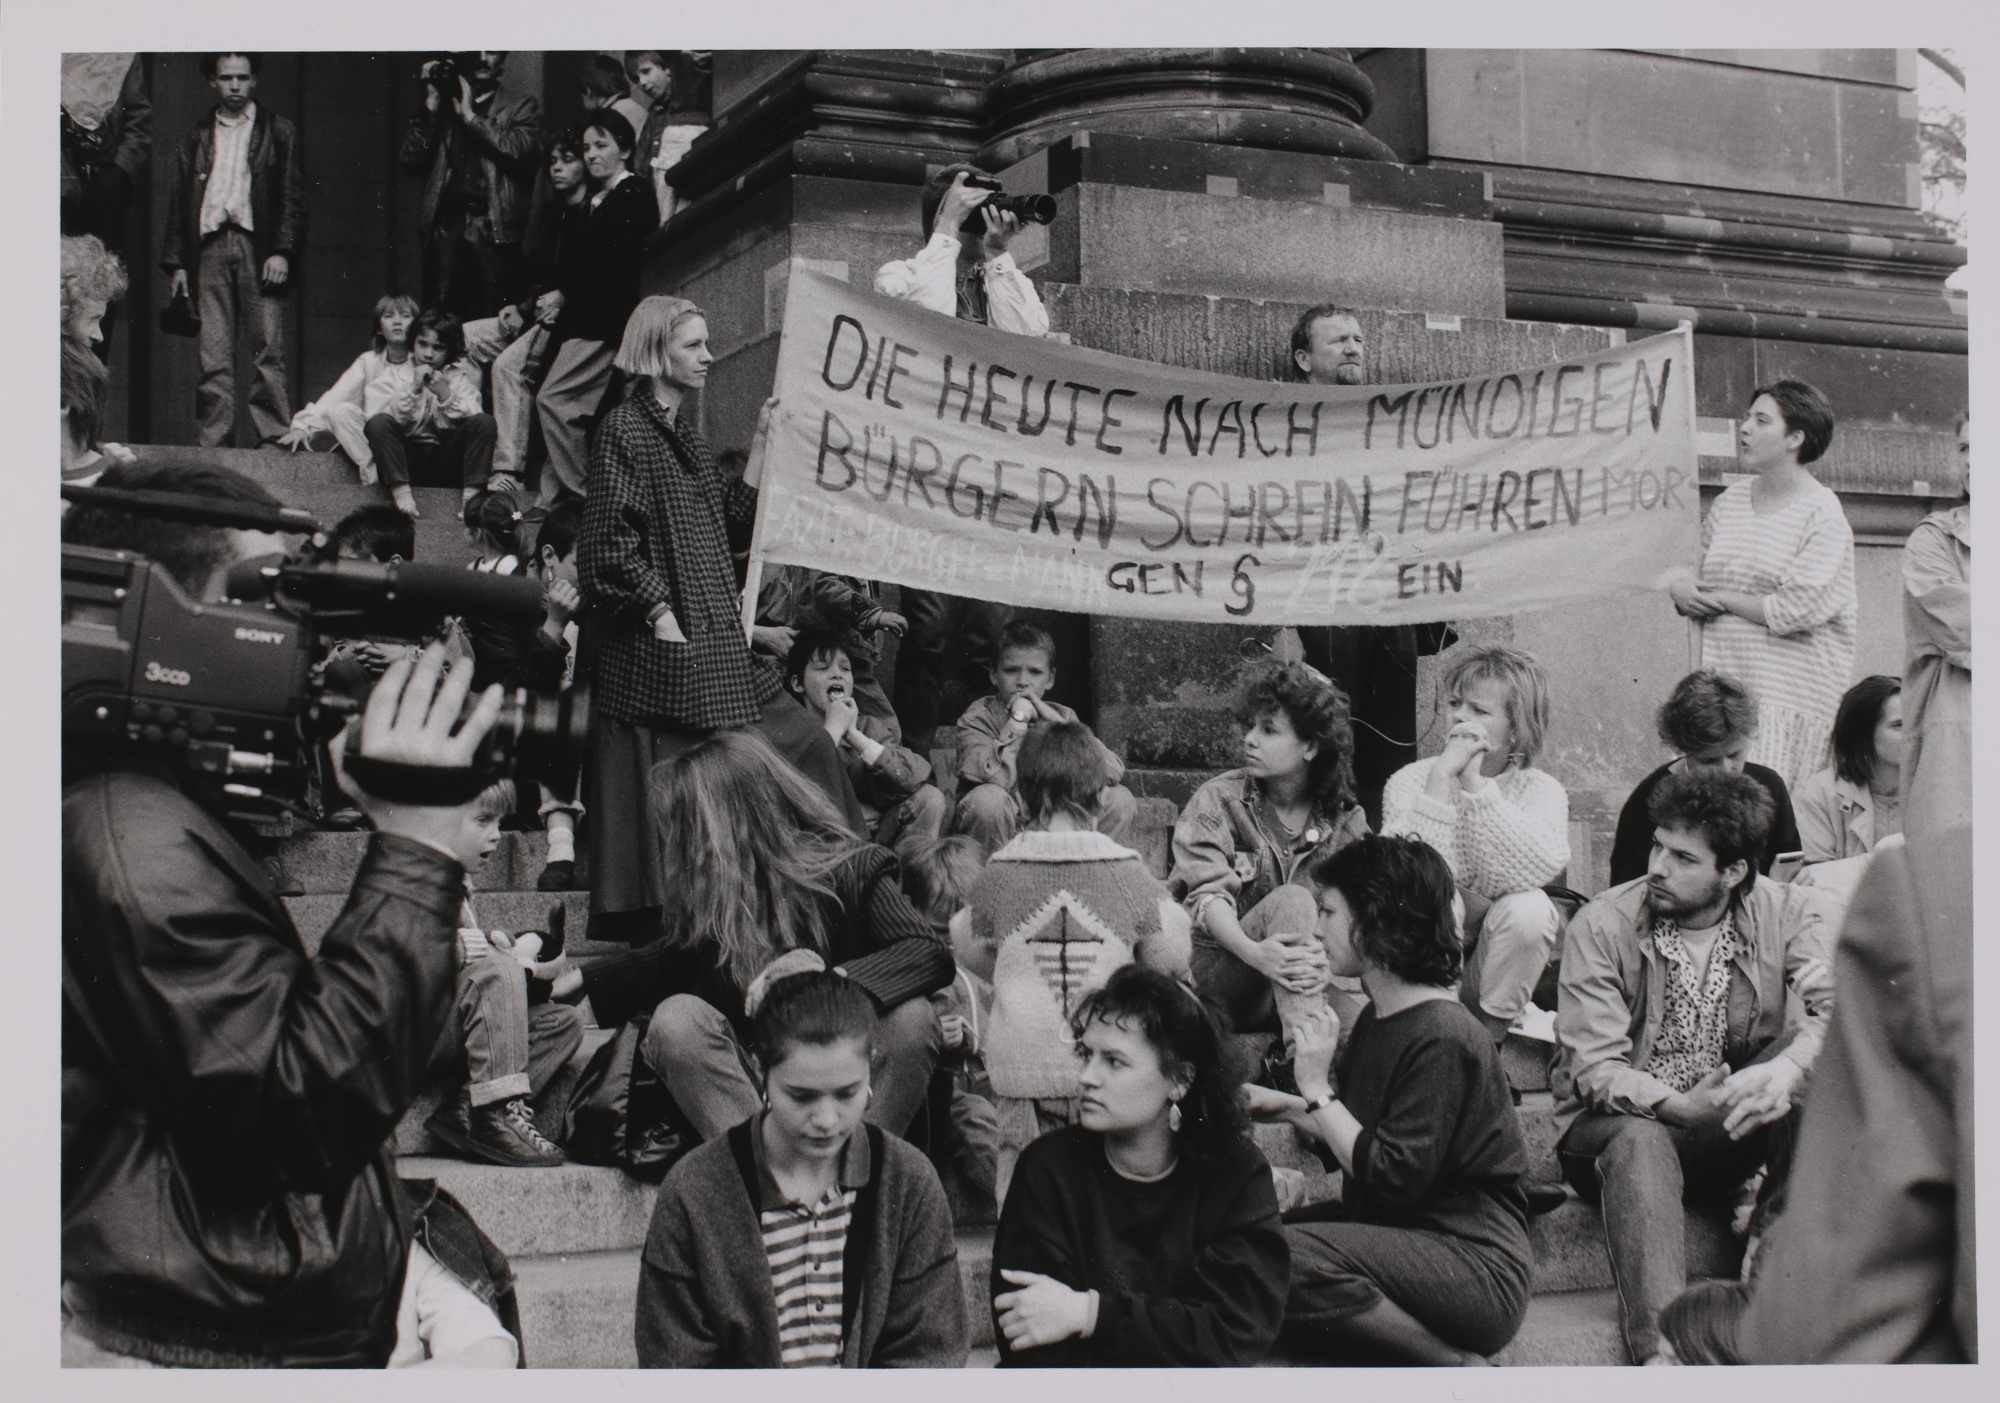 „Die heute nach mündigen Bürgern schrein, führen morgen § 218 ein“ steht auf dem Plakat von Lisa Coch (Transparent, links) und Gabi Zekina (Transparent, rechts) auf der Demonstration gegen den Abtreibungsparagrafen am Berliner Dom, 1990.